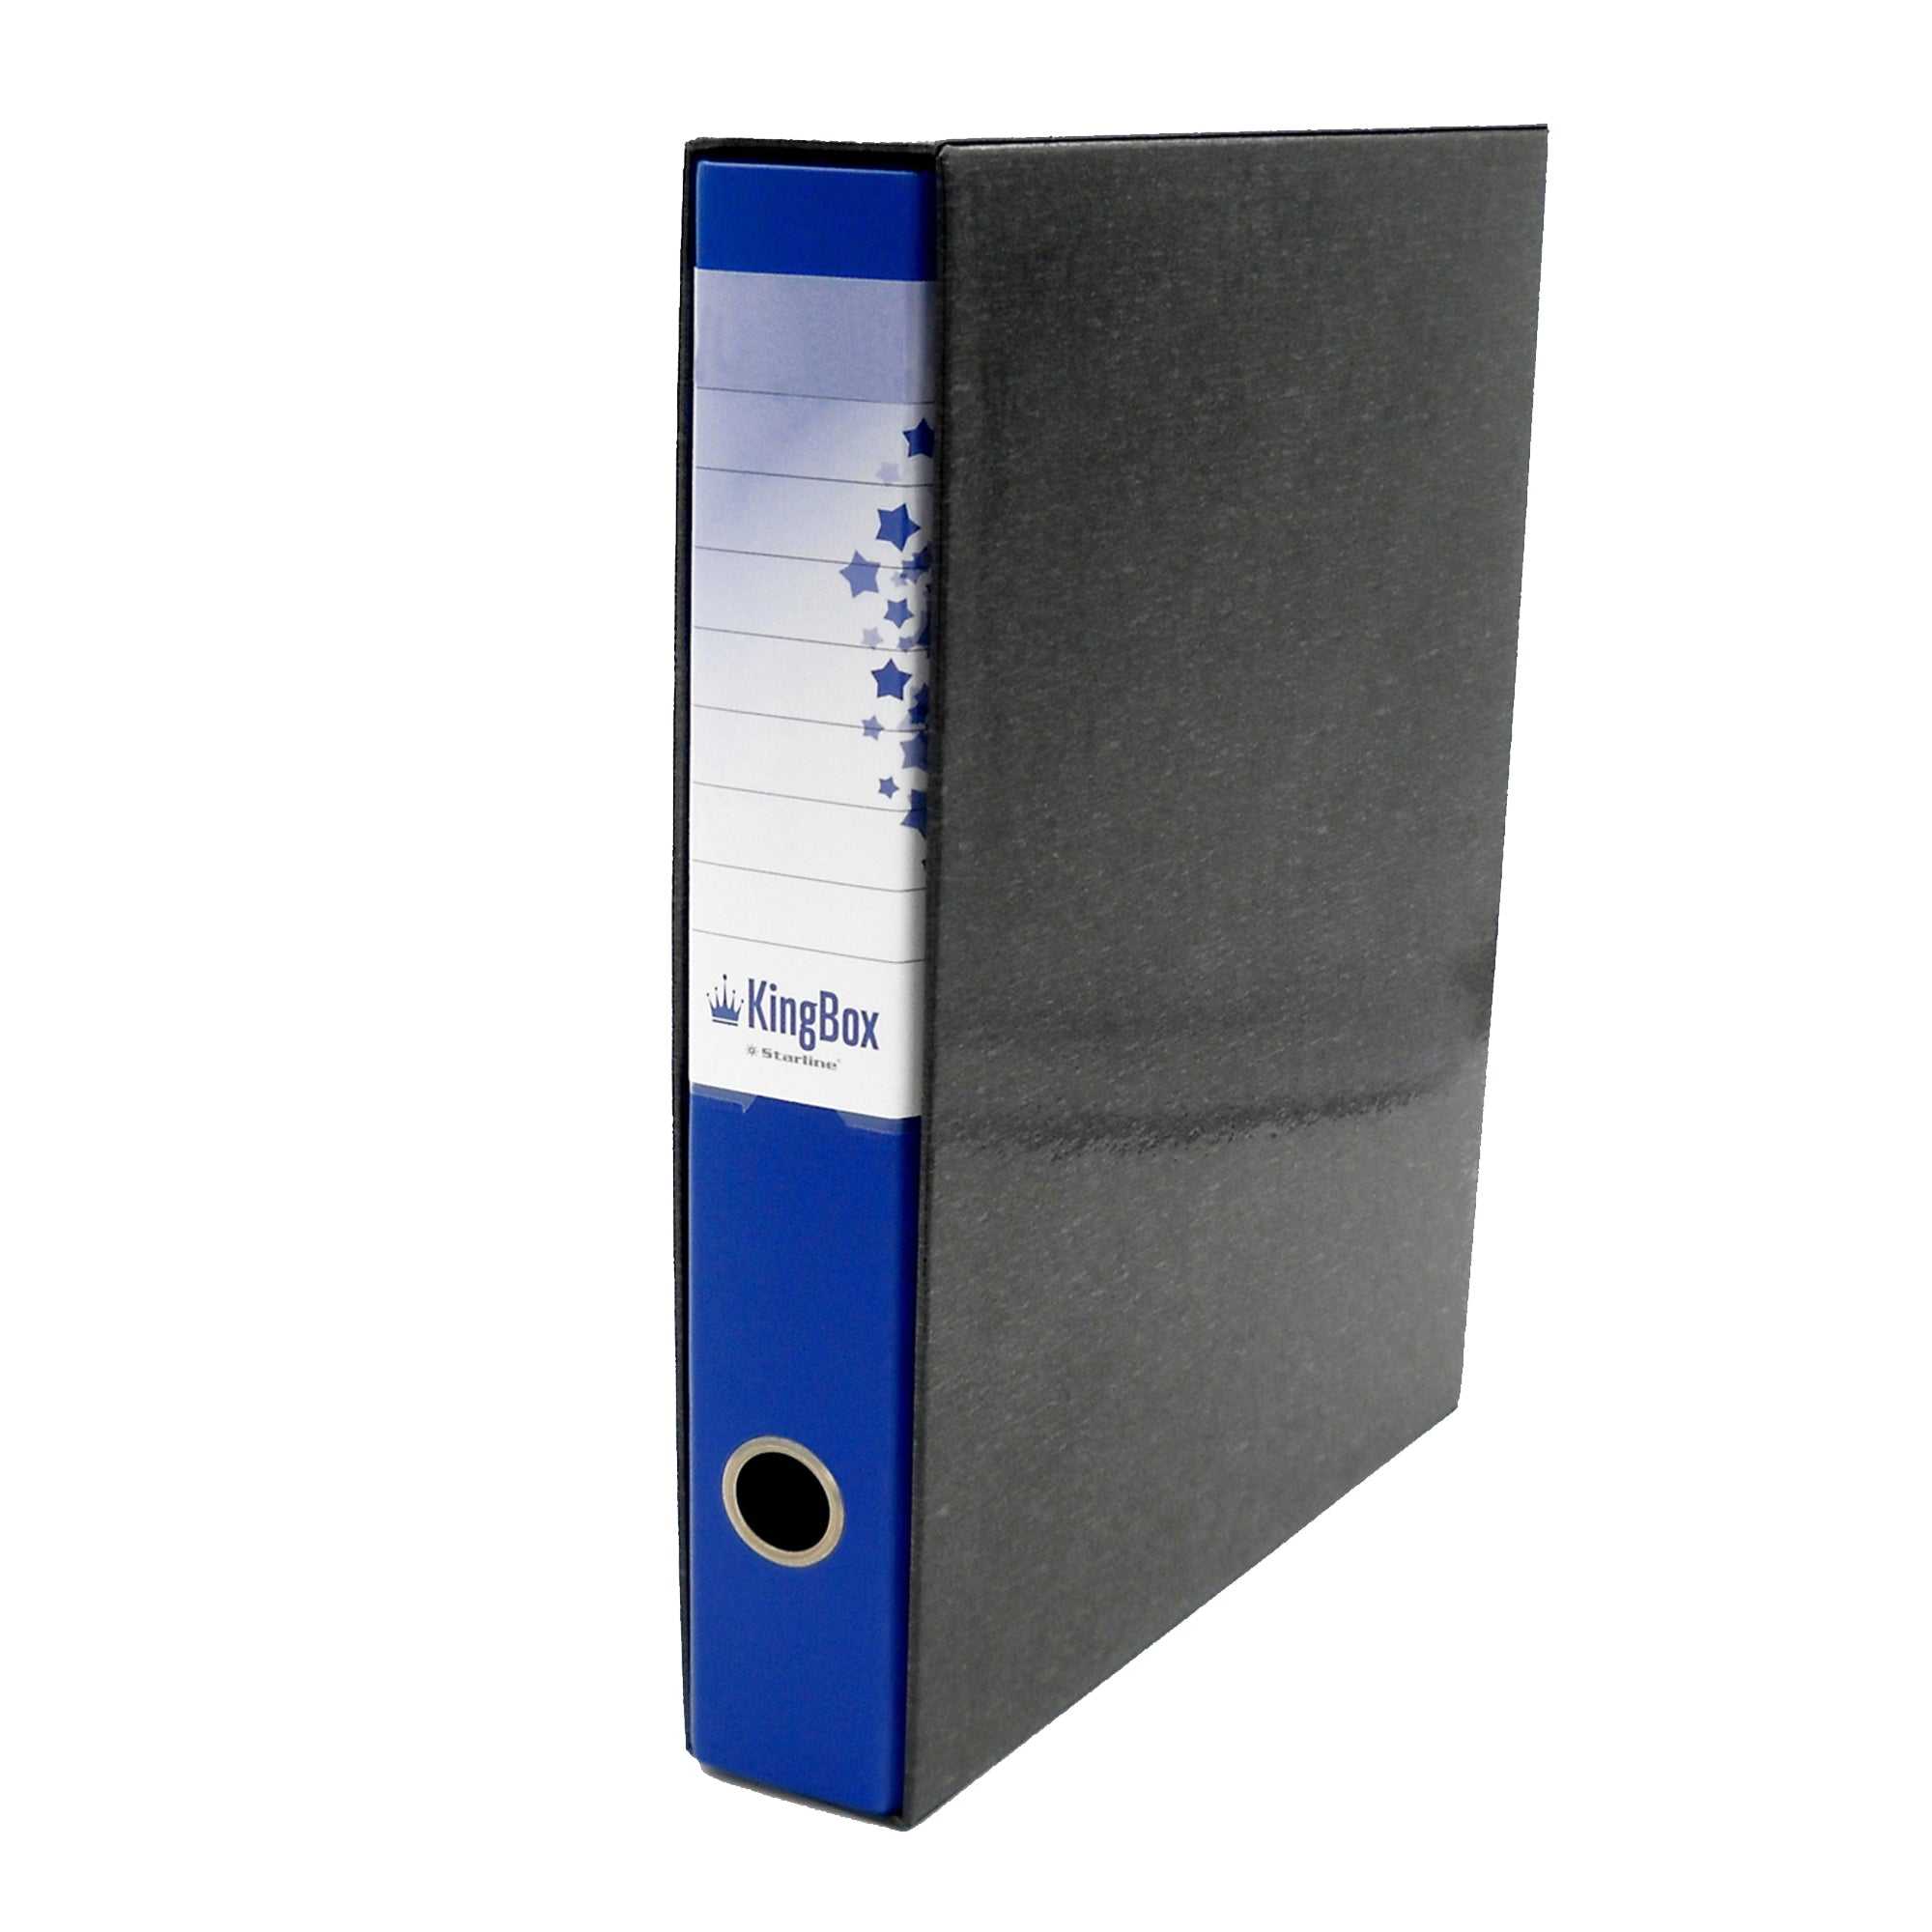 starline-registratore-kingbox-f-to-protocollo-dorso-5cm-blu